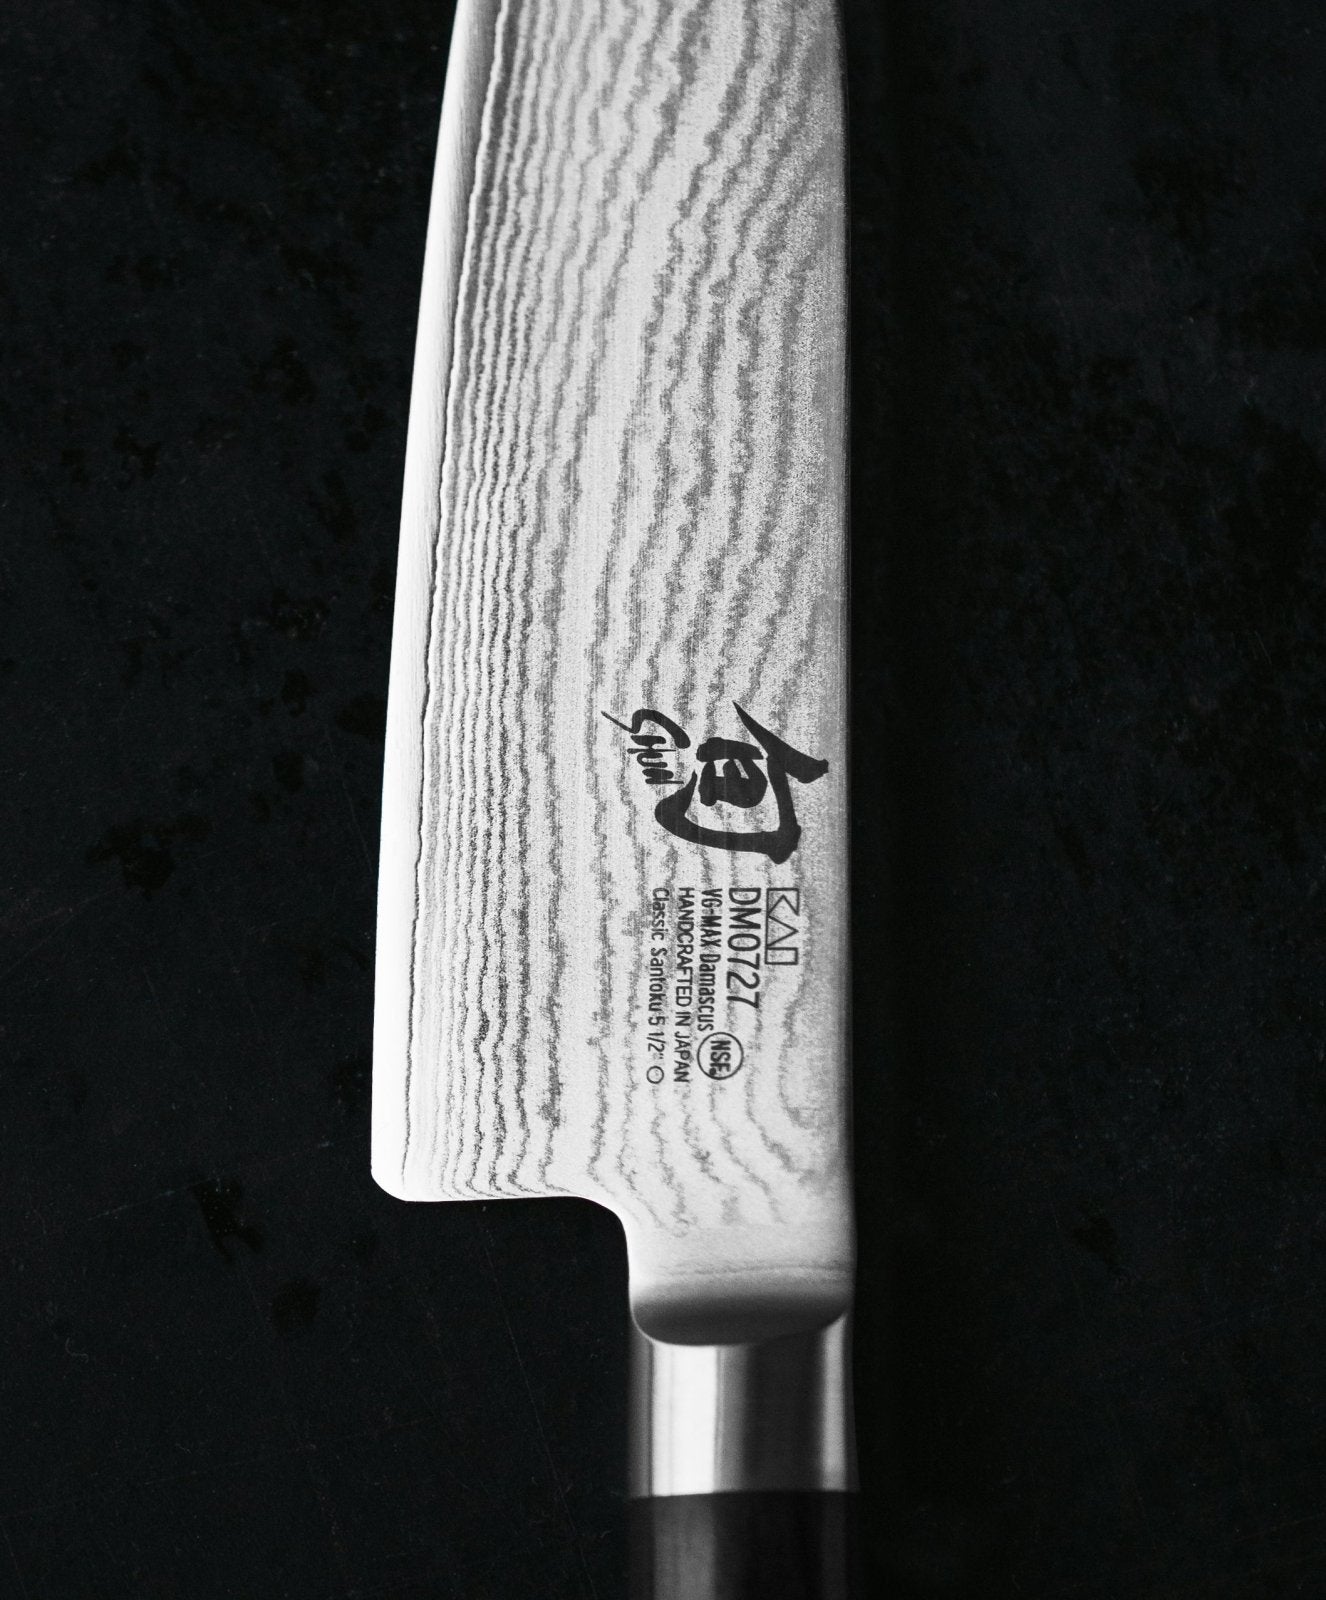 KAI Shun 16.5cm Gokujo Boning Knife - KAI-DM-0743 - The Cotswold Knife Company